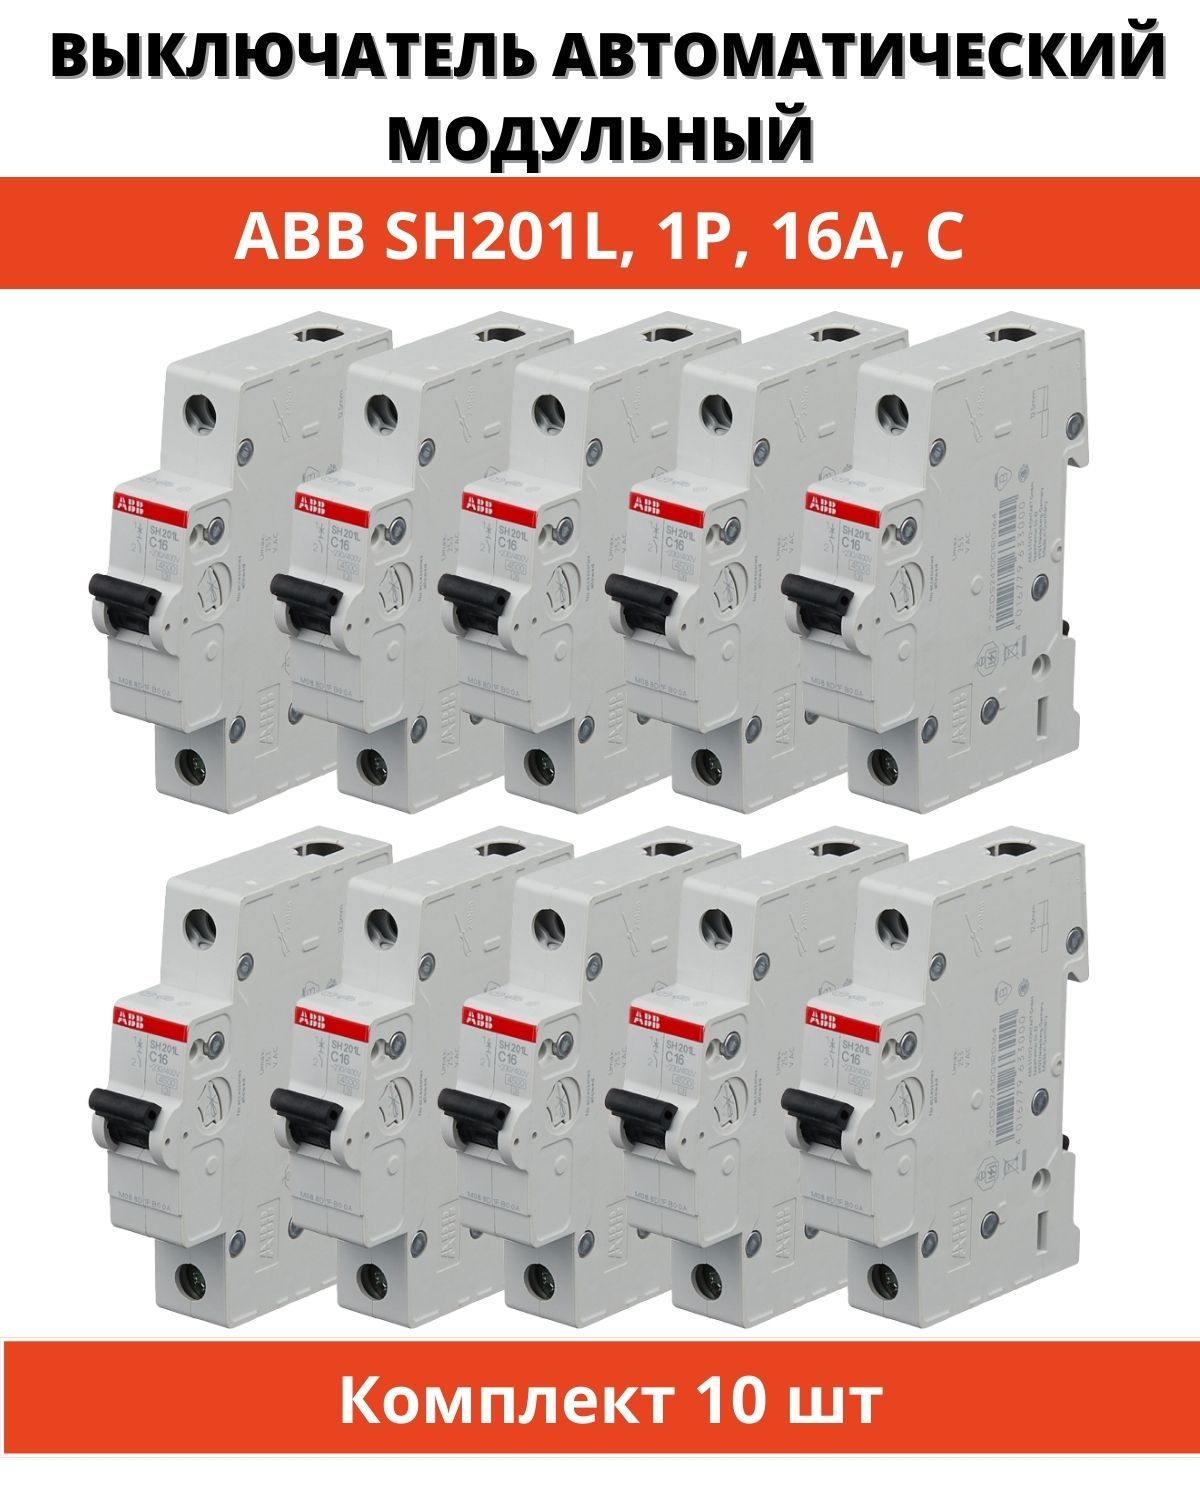 ABB 16a sh201l c16 1p. ABB 16a sh201l ABB c16 1p. ABB s201 c16. Разновидность автоматов ABB. Купить автоматические выключатели abb